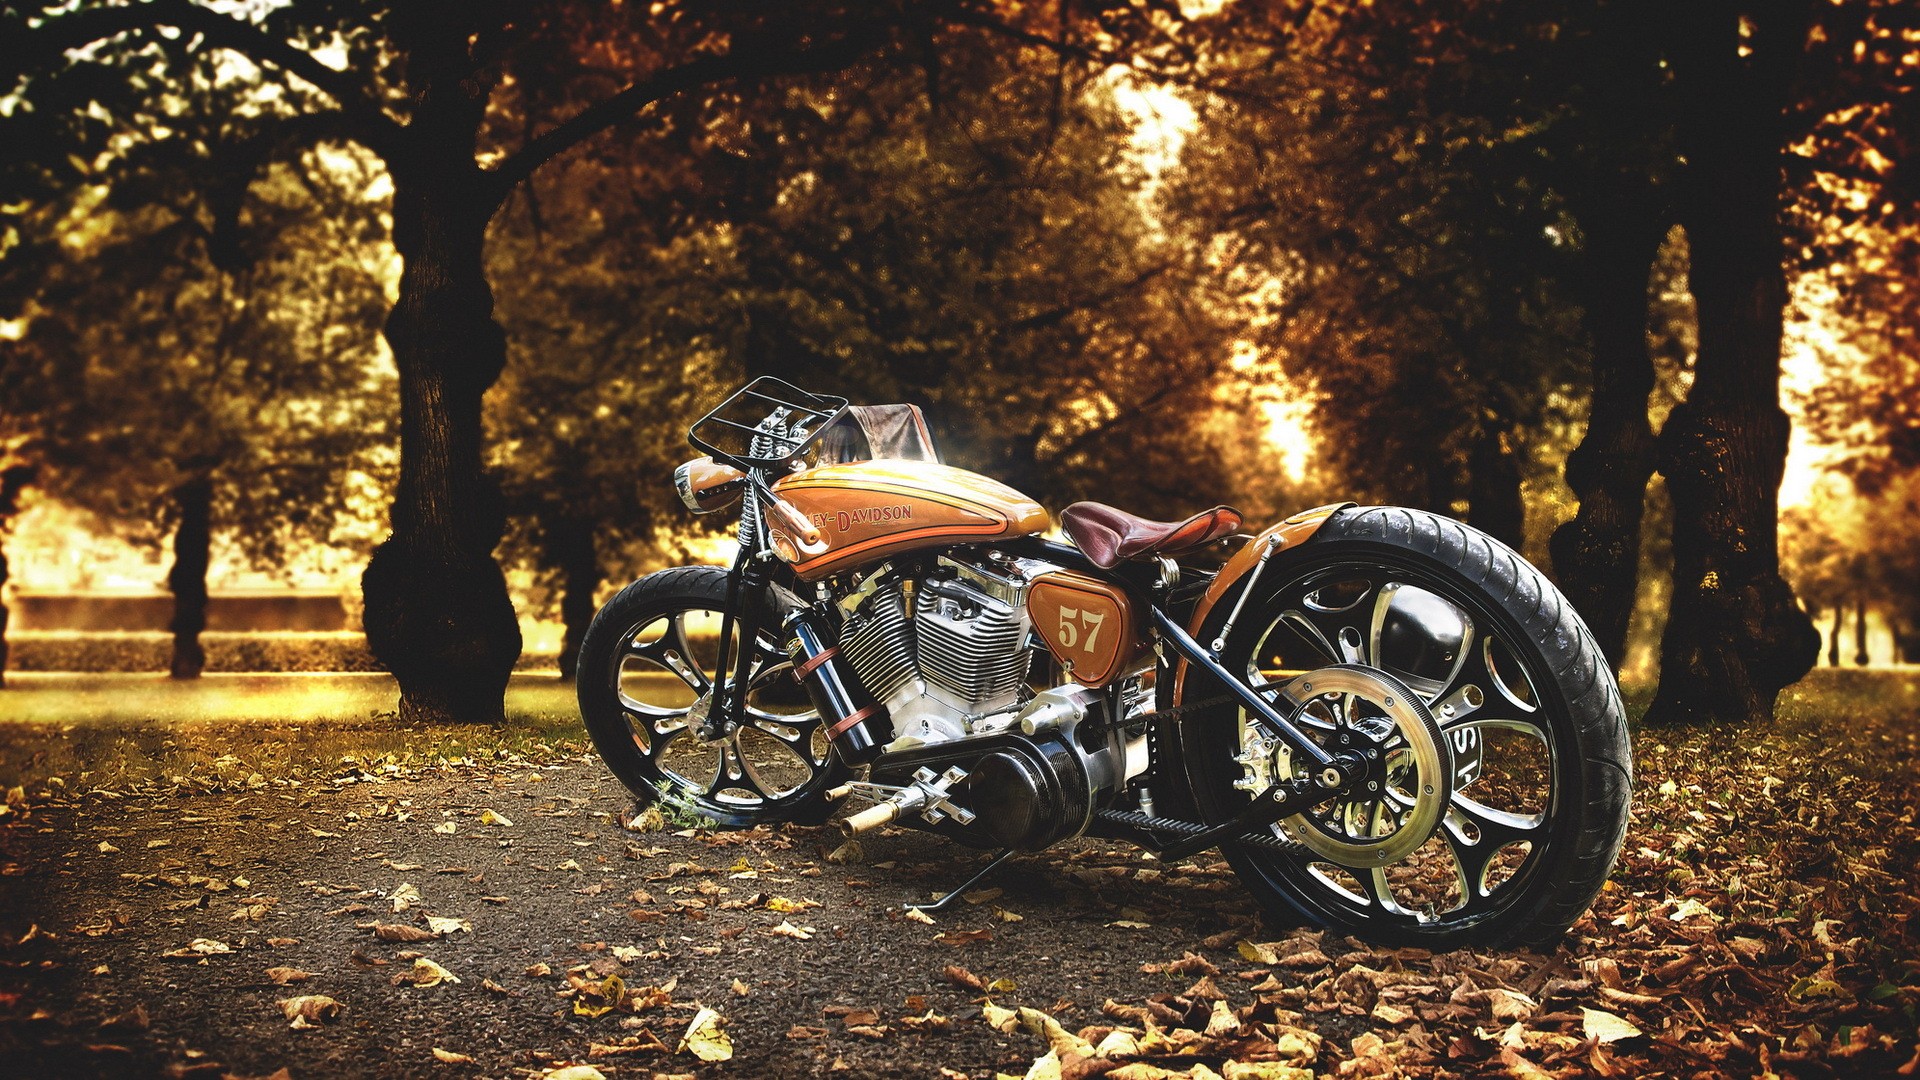 General 1920x1080 numbers motorcycle American motorcycles fall Harley-Davidson vehicle Orange Motorcycles trees leaves